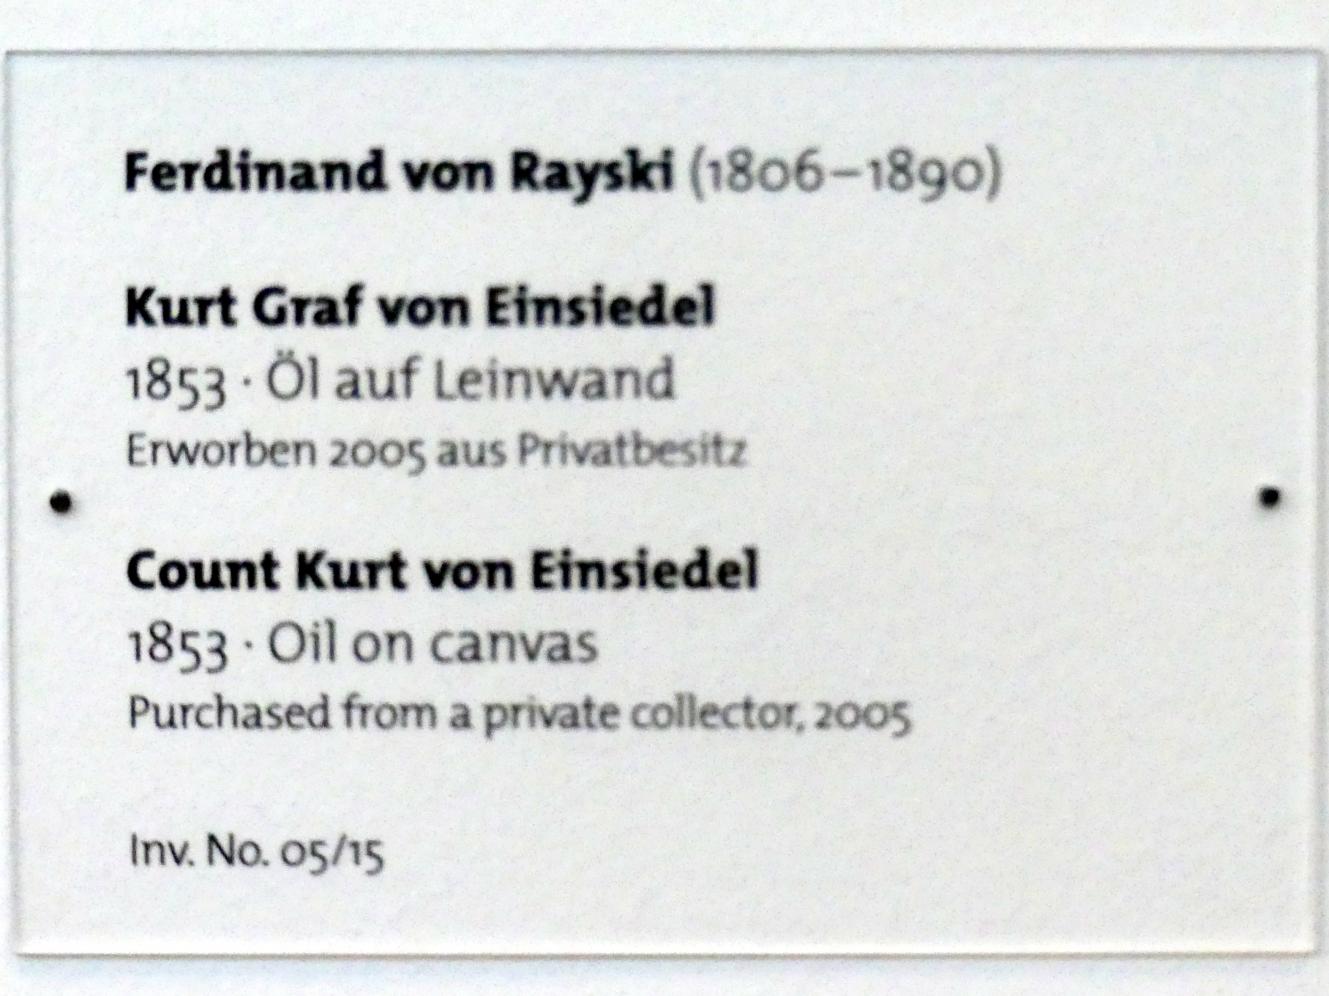 Ferdinand von Rayski (1837–1875), Kurt Graf von Einsiedel, Dresden, Albertinum, Galerie Neue Meister, 1. Obergeschoss, Mosaiksaal, 1853, Bild 2/2